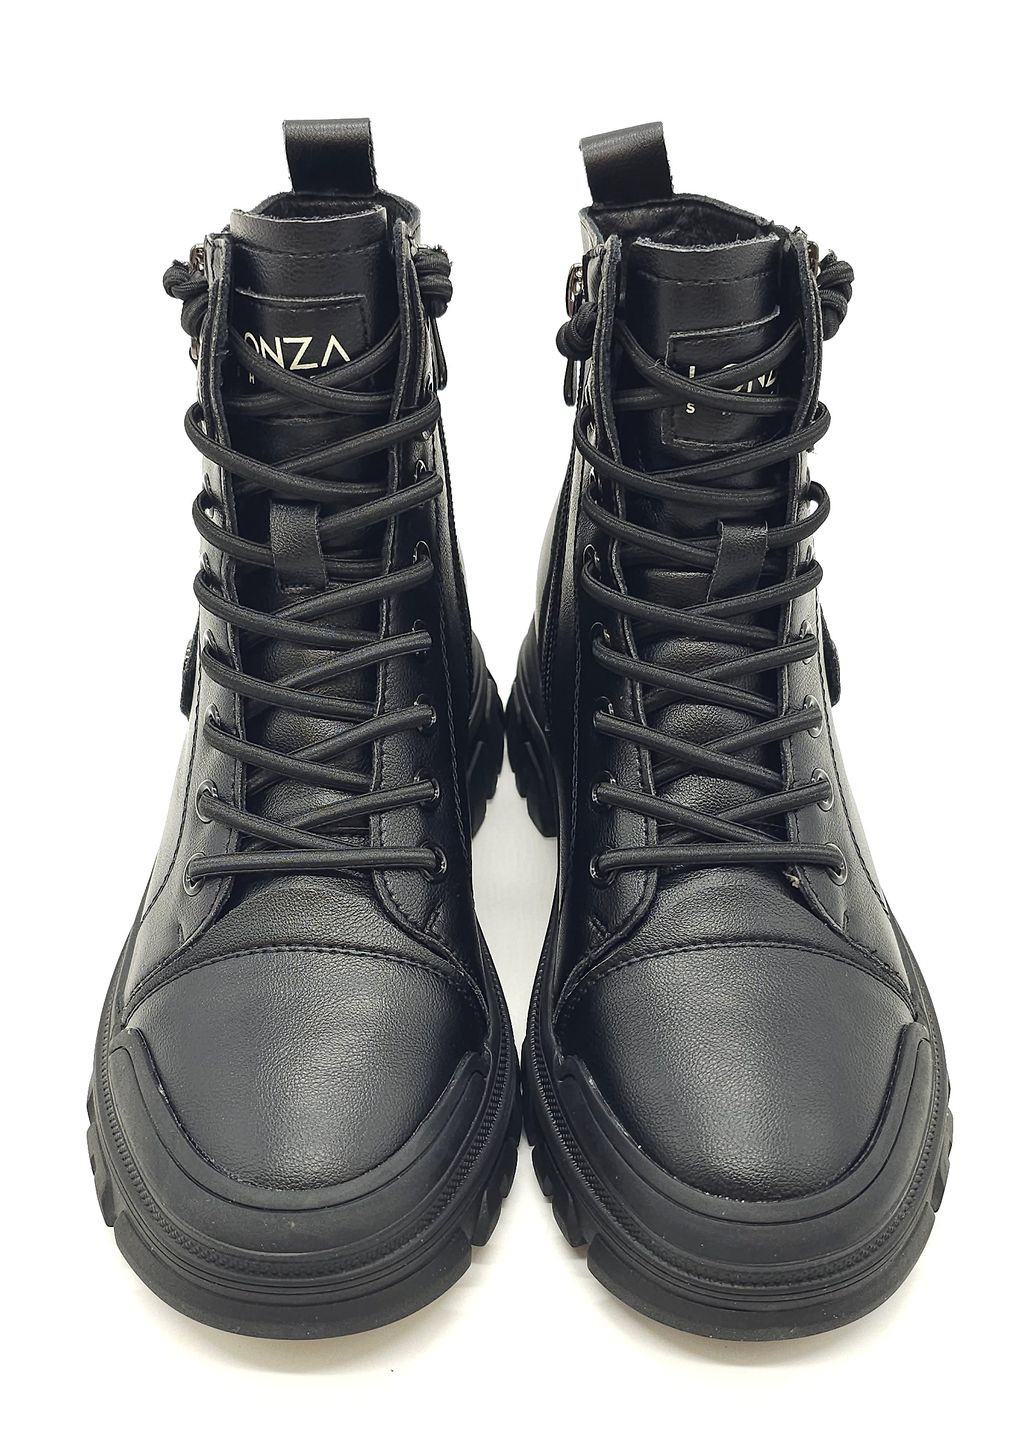 Осенние женские ботинки черные кожаные l-12-8 23 см (р)женские ботинки черные кожаные l-12-8 23 см 36(р) Lonza